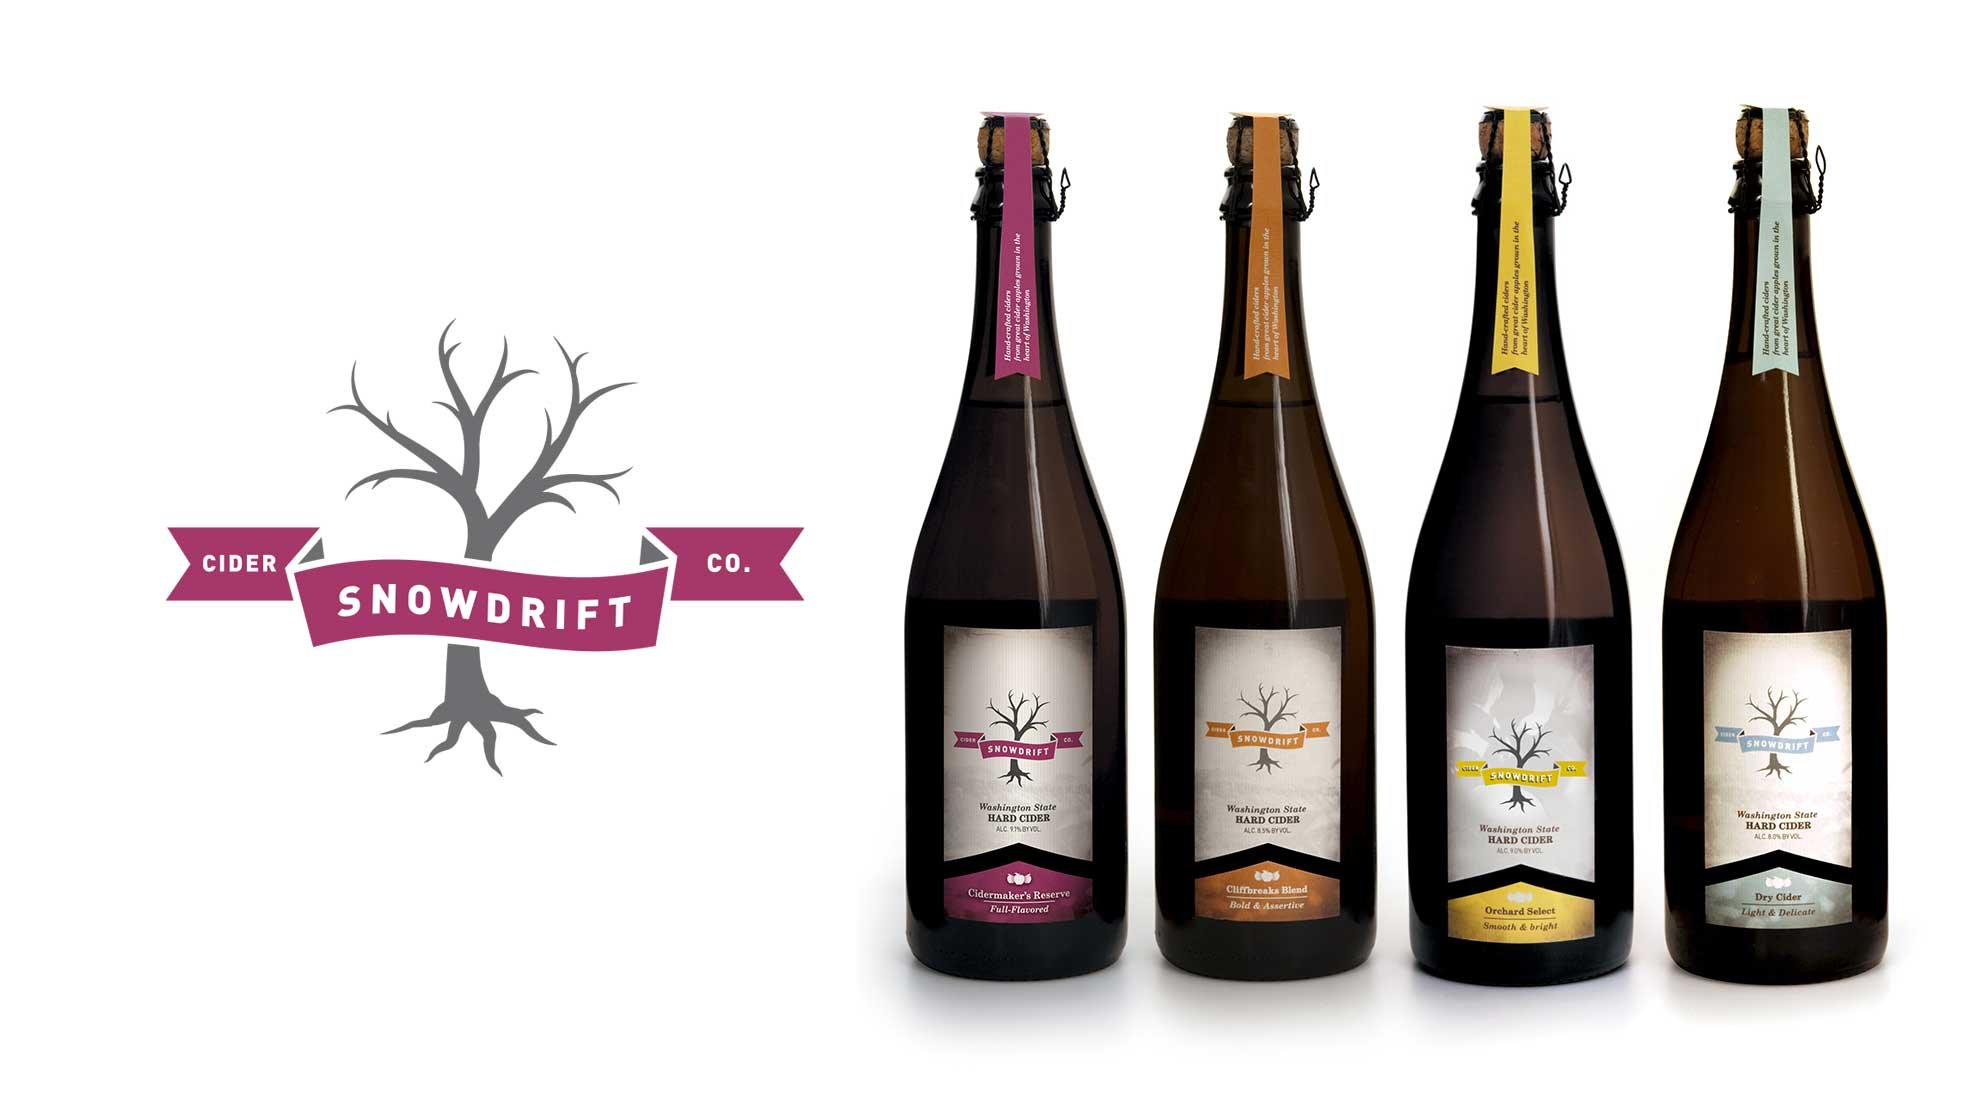 Snowdrift-Cider-logo-and-bottles.jpg